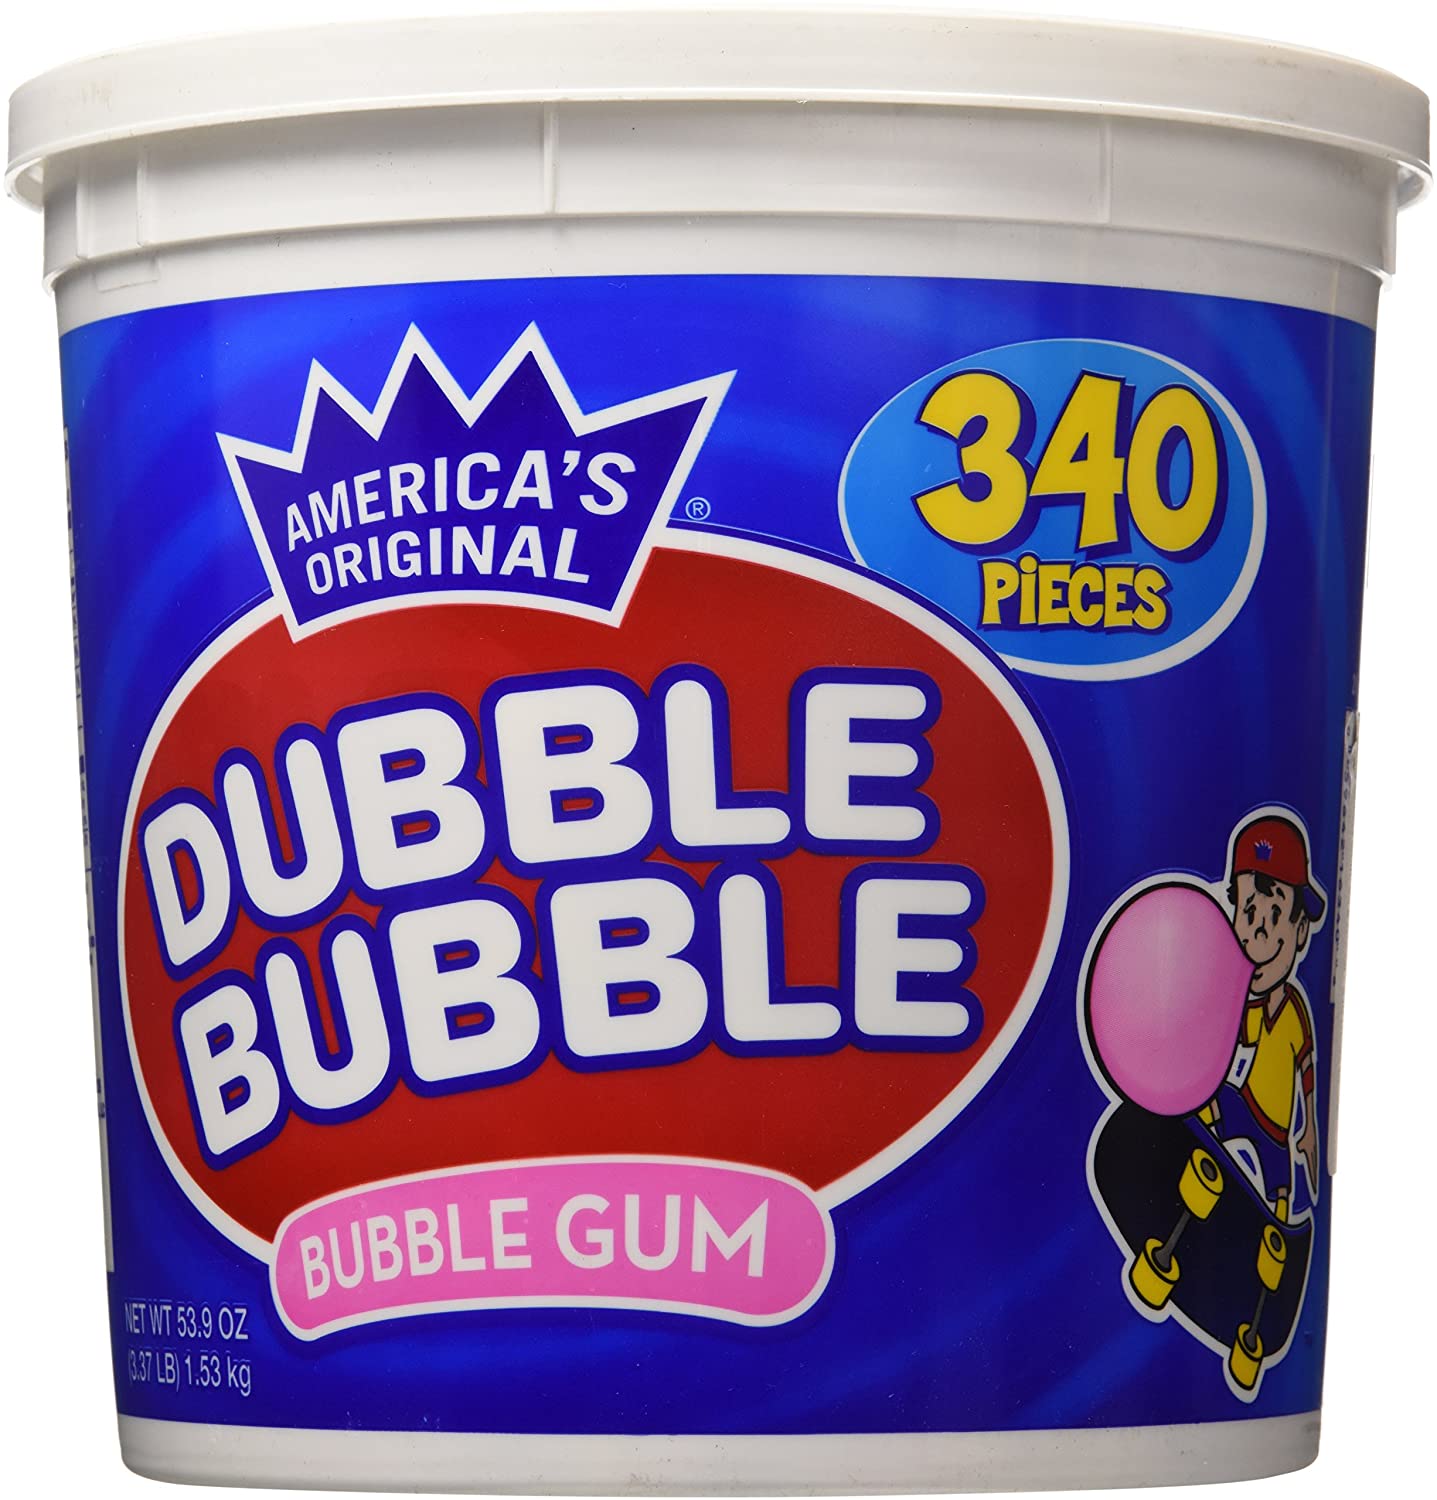 Dubble Bubble Twist Wrapped Chewing & Bubble Gum, 340-Pack